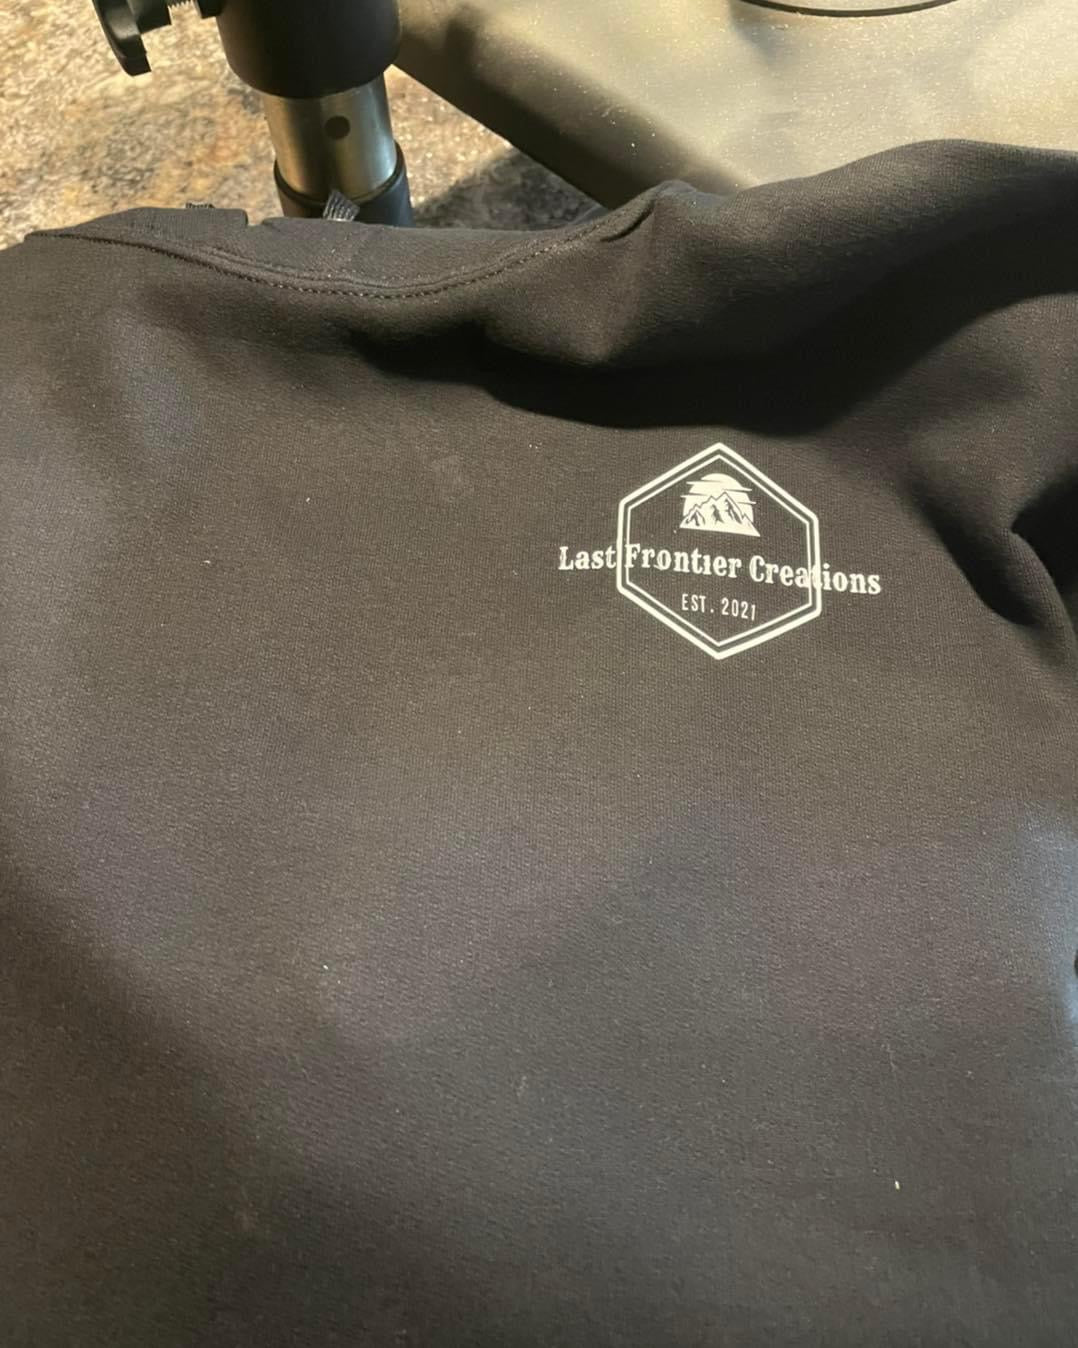 Last frontier creations sweatshirts